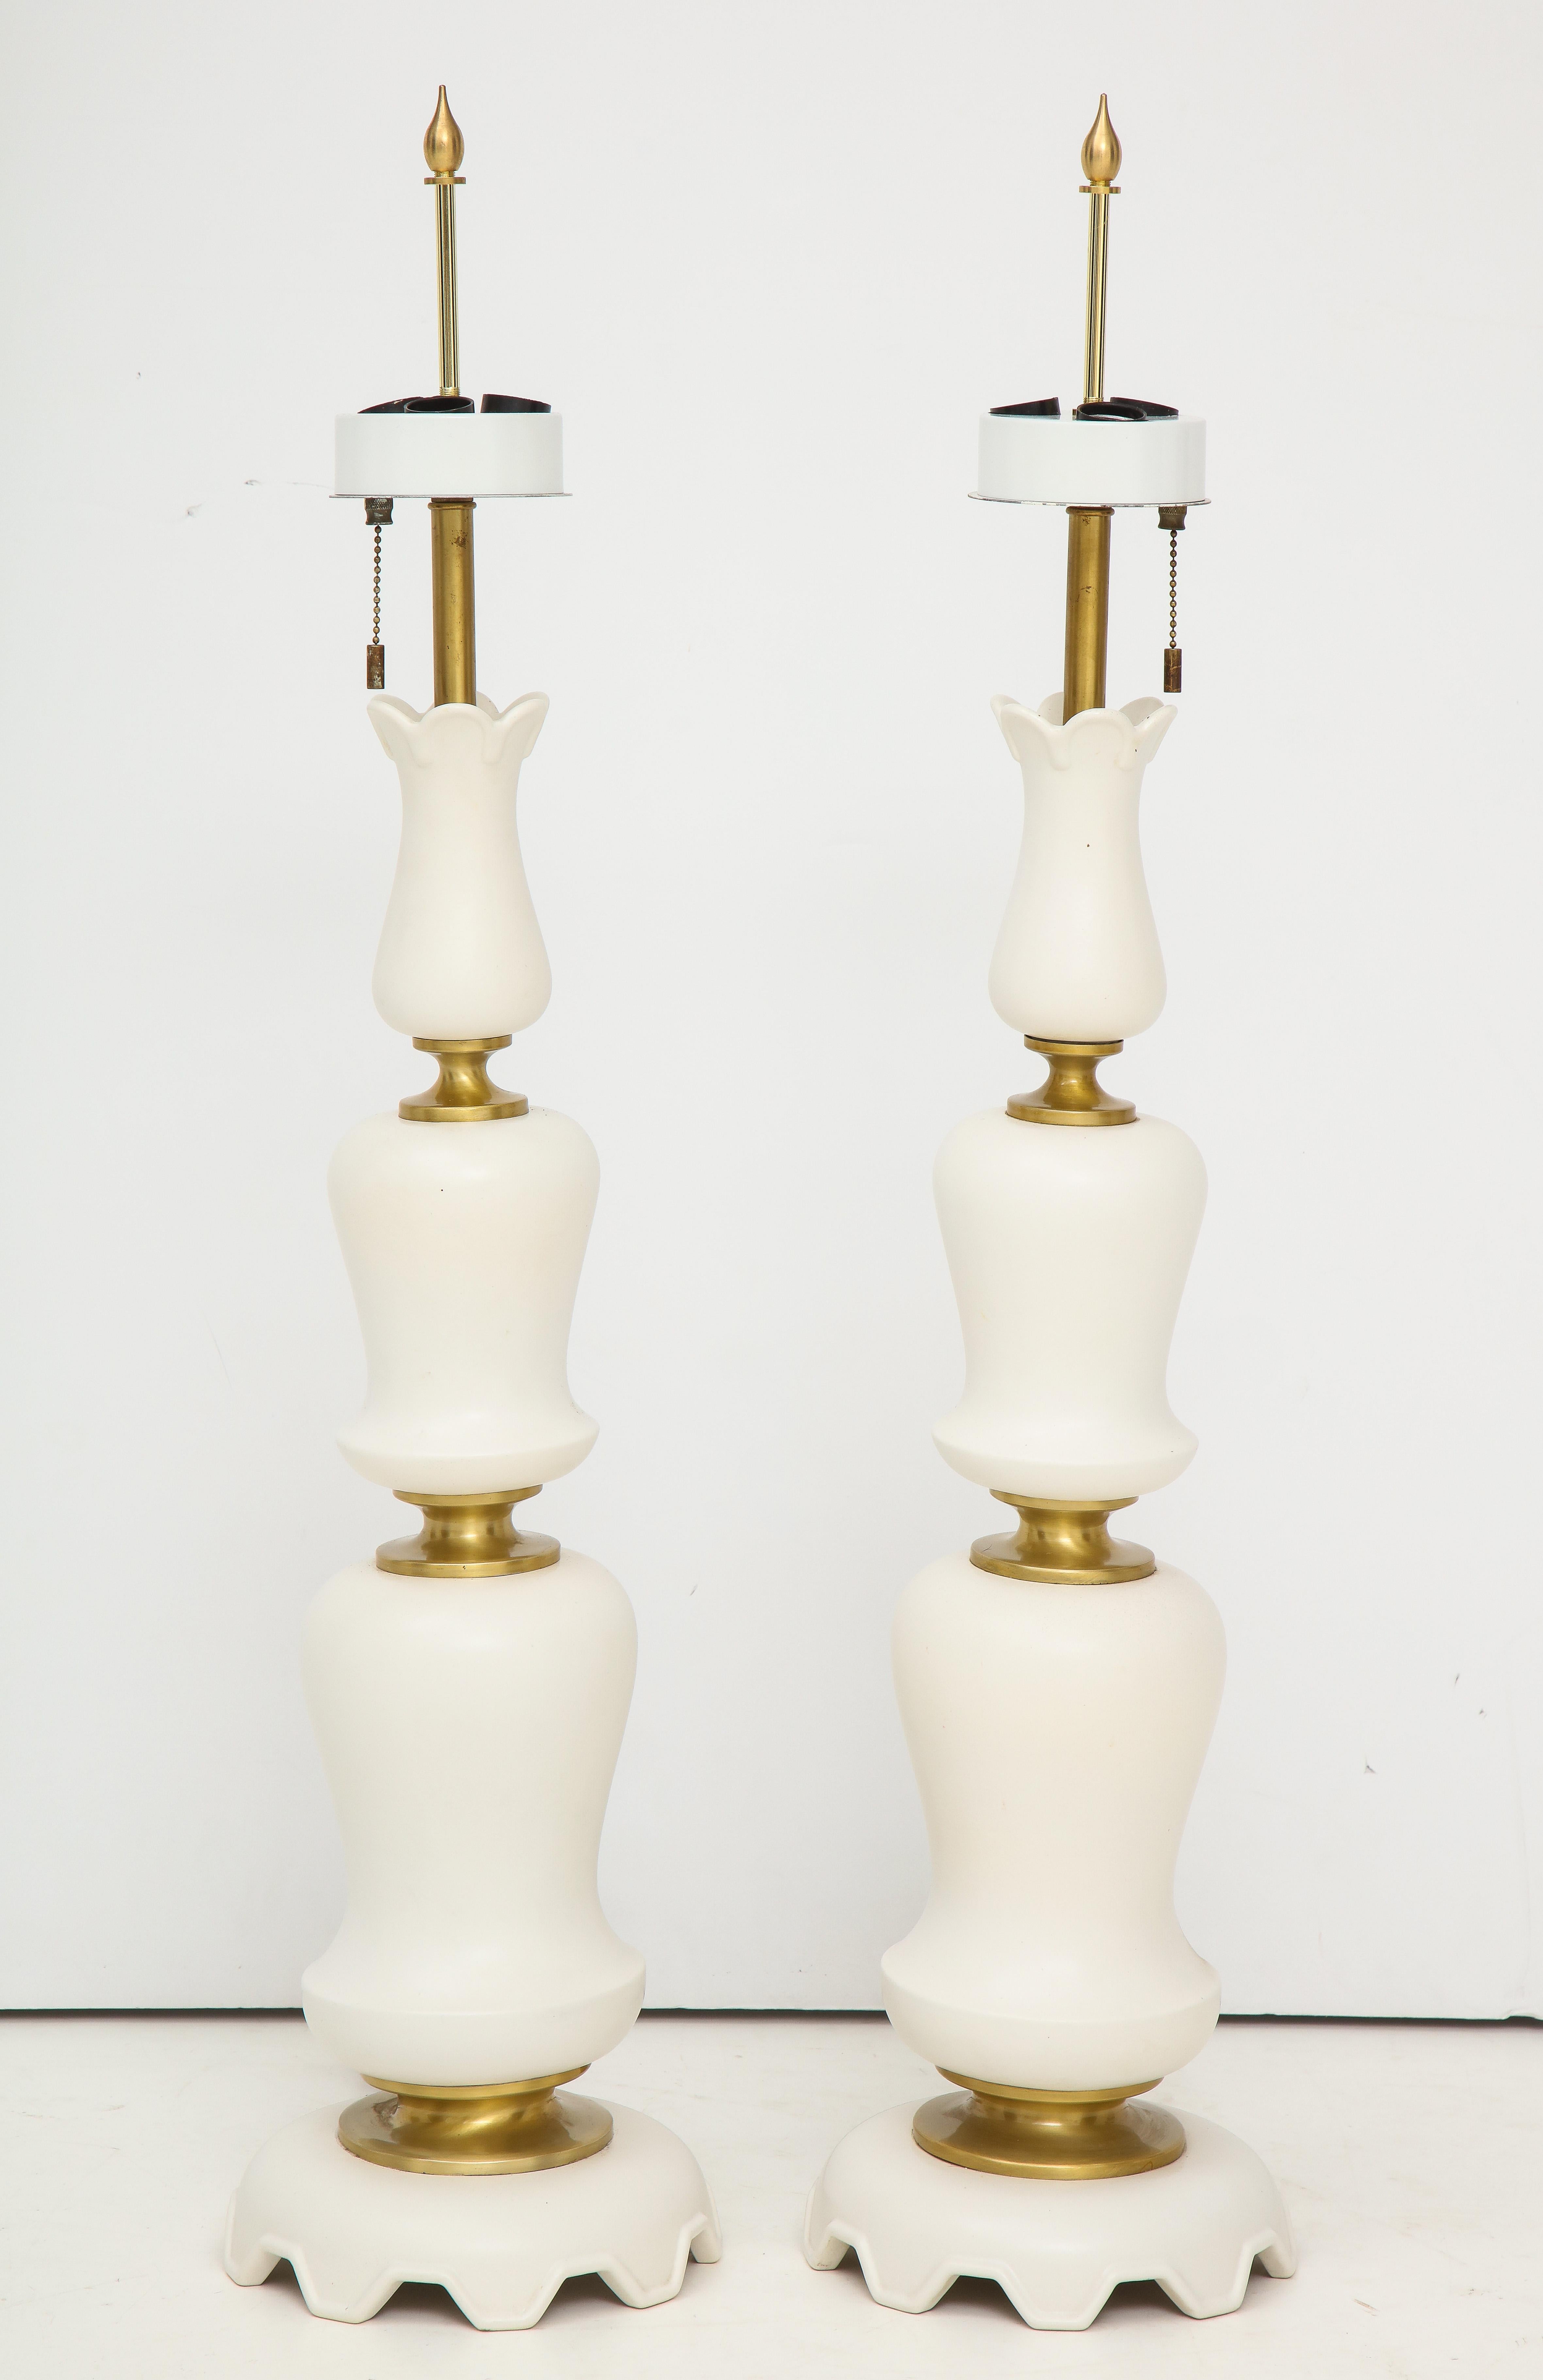 Paire de lampes de table sculpturales en porcelaine blanche matte par Gerald Thurston pour Lightolier.
Les lampes ont chacune trois prises de courant et elles ont été recâblées.
Une des lampes a une légère fissure vers le bas, comme on le voit sur